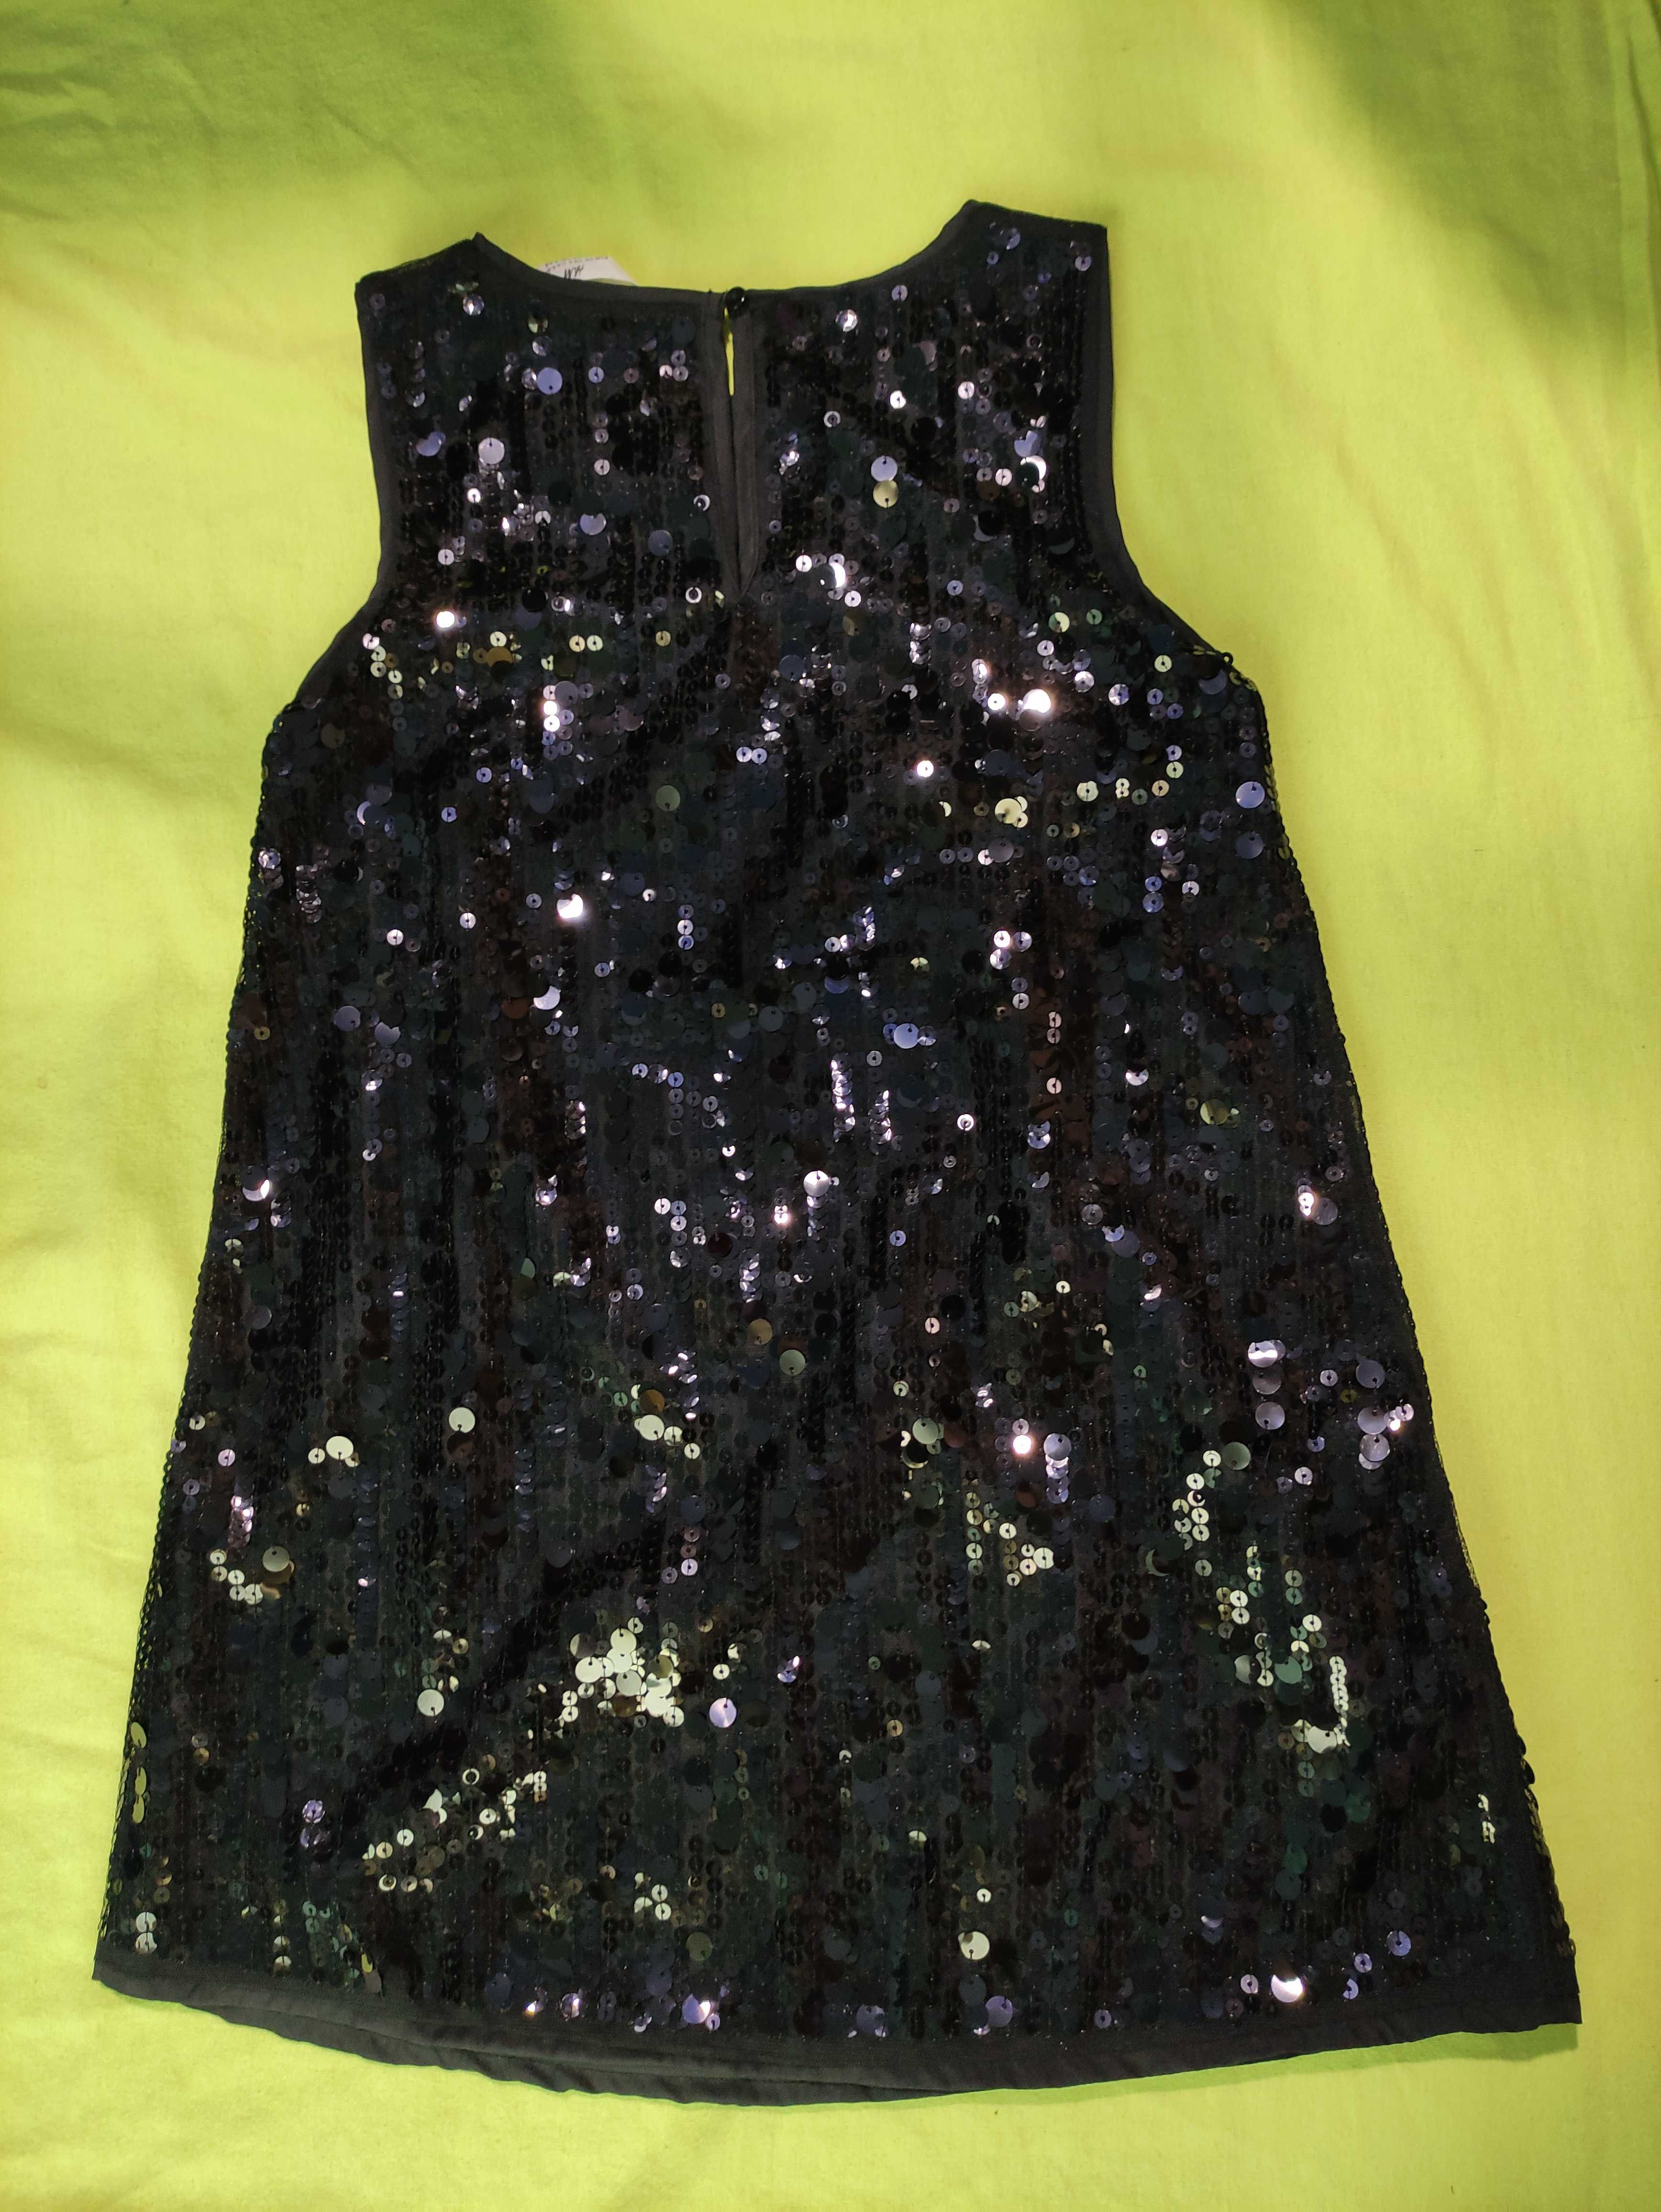 Детска рокля с пайети, черна, 116см  (4-6 години)